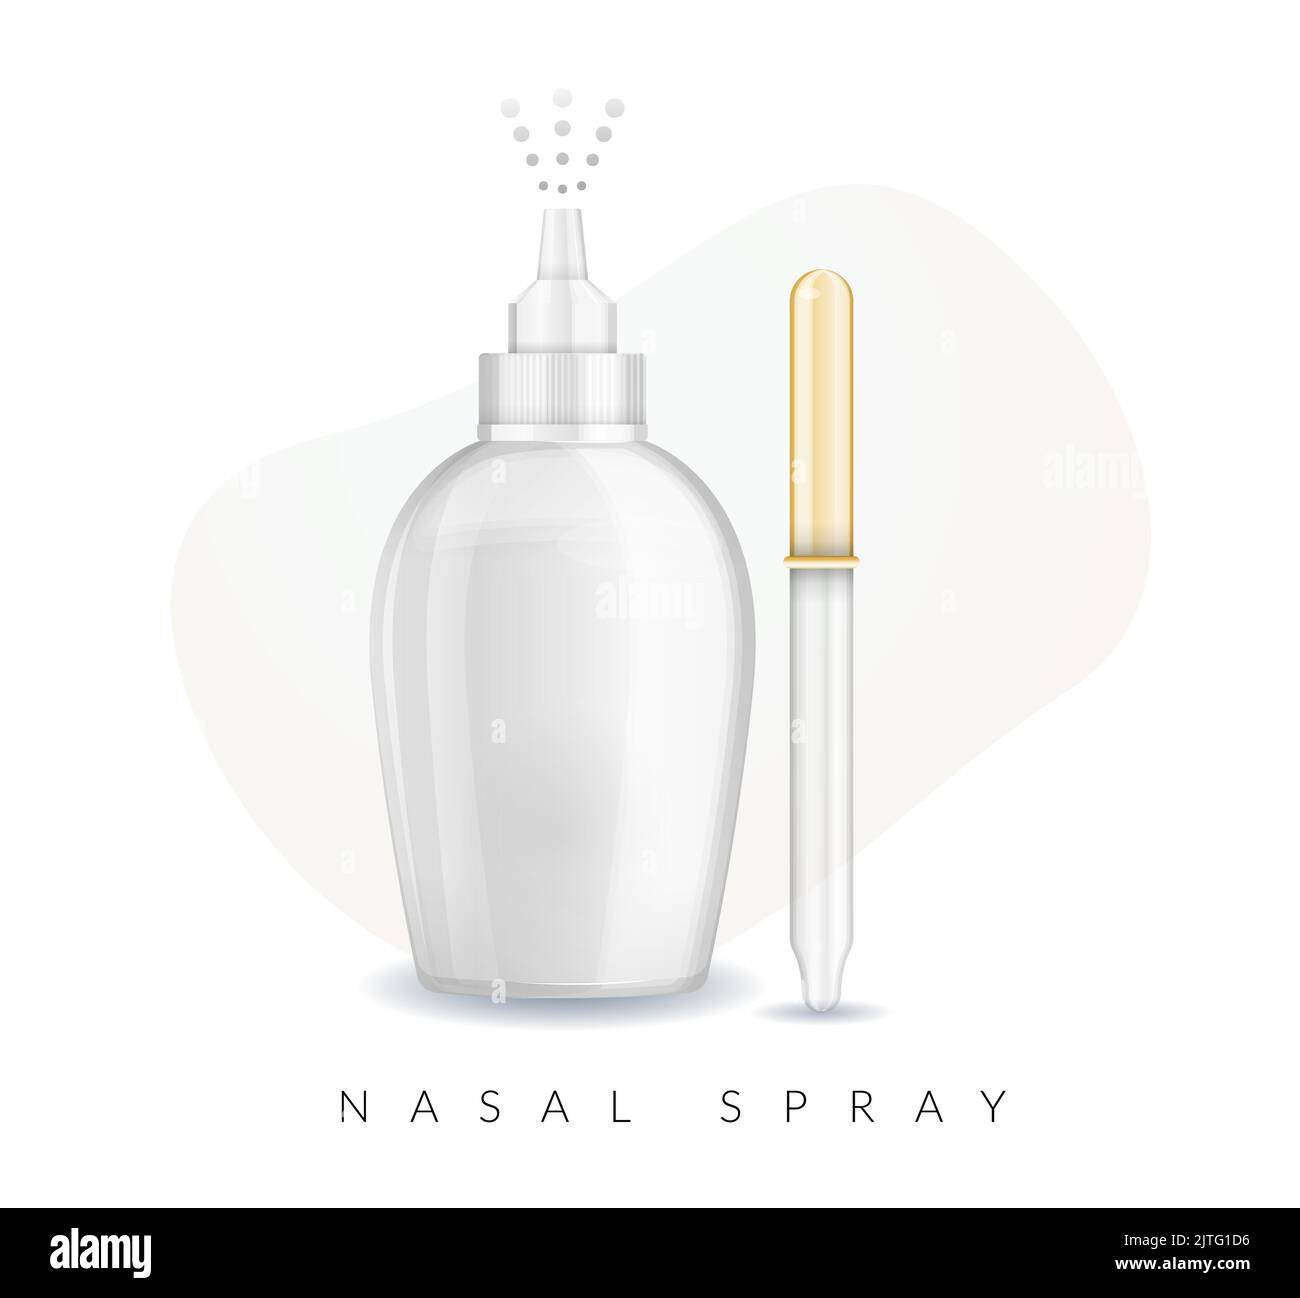 Nasal Spray Bottle Mockup - Stock Illustration  as EPS 10 File Stock Vector